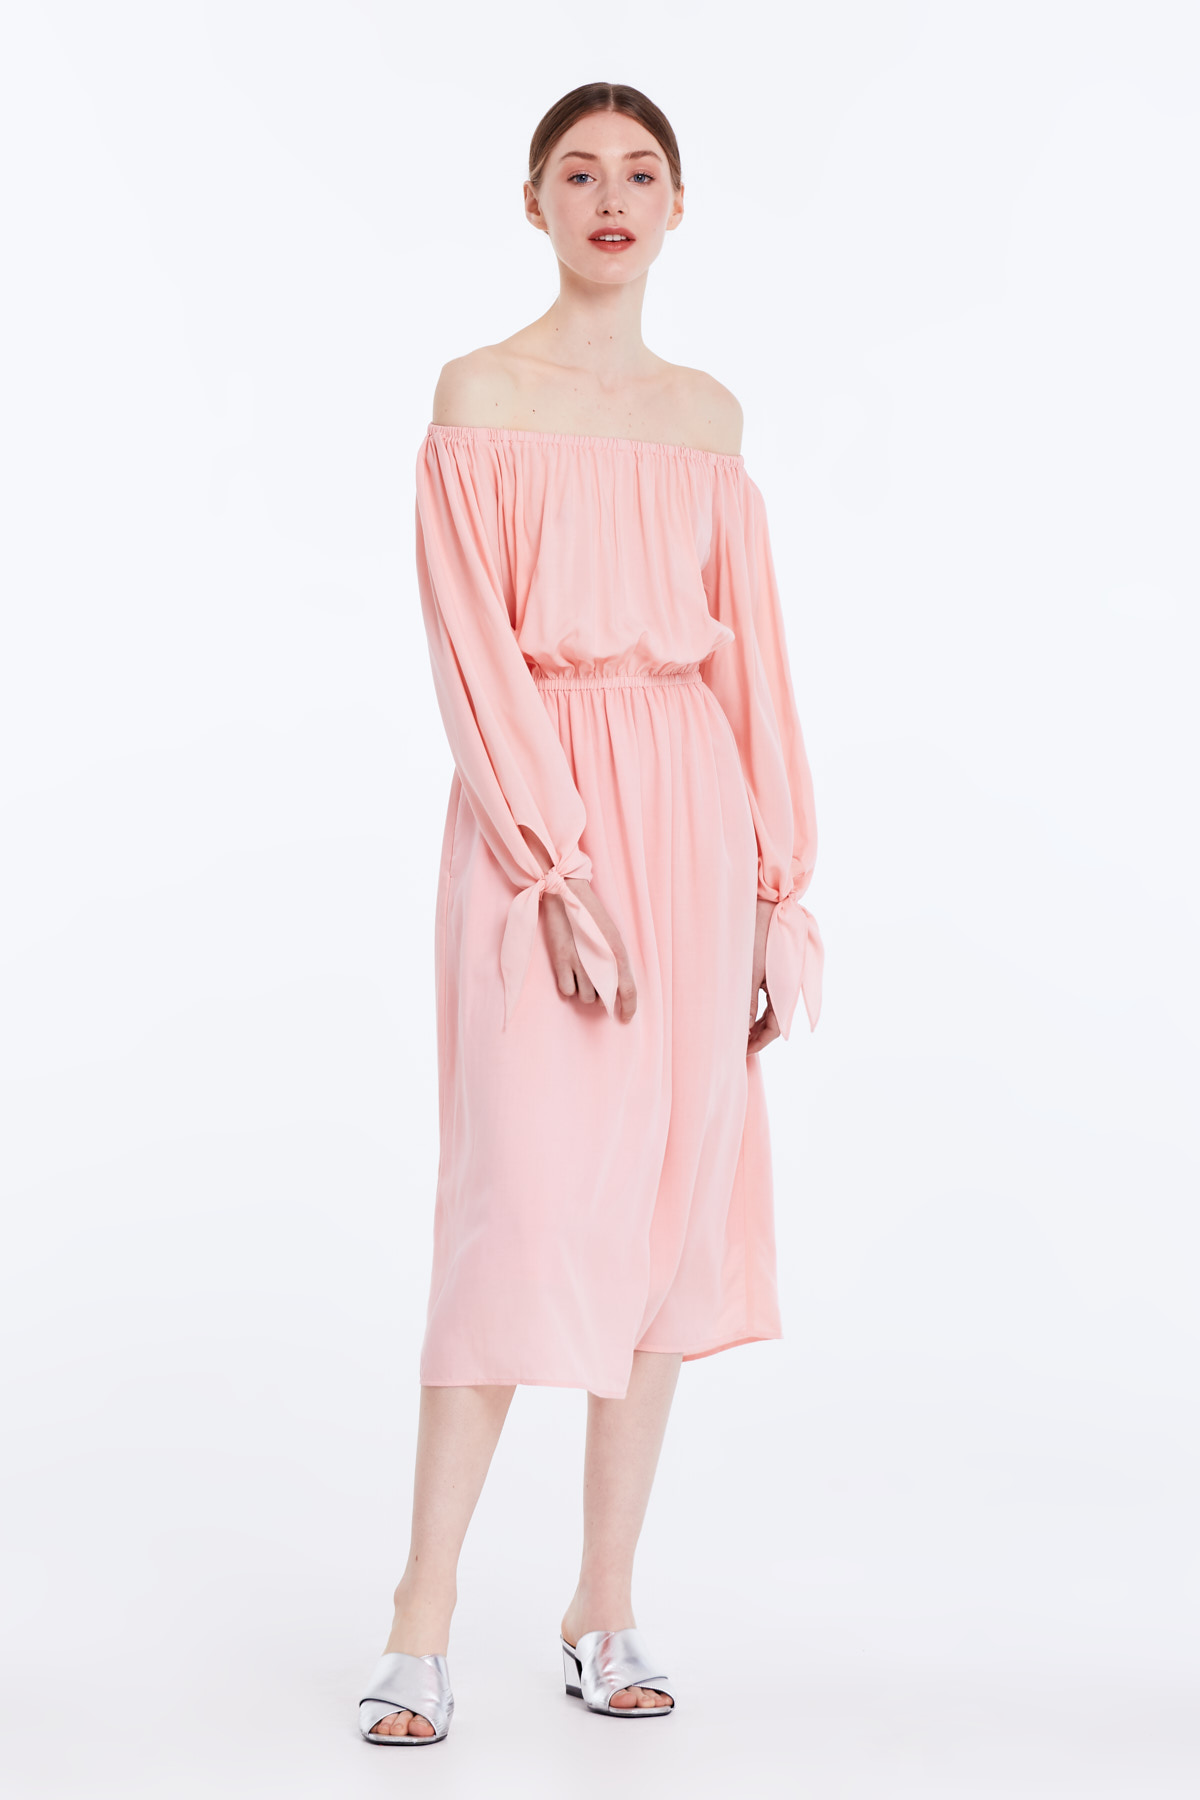 Off-shoulder powder pink dress, photo 4